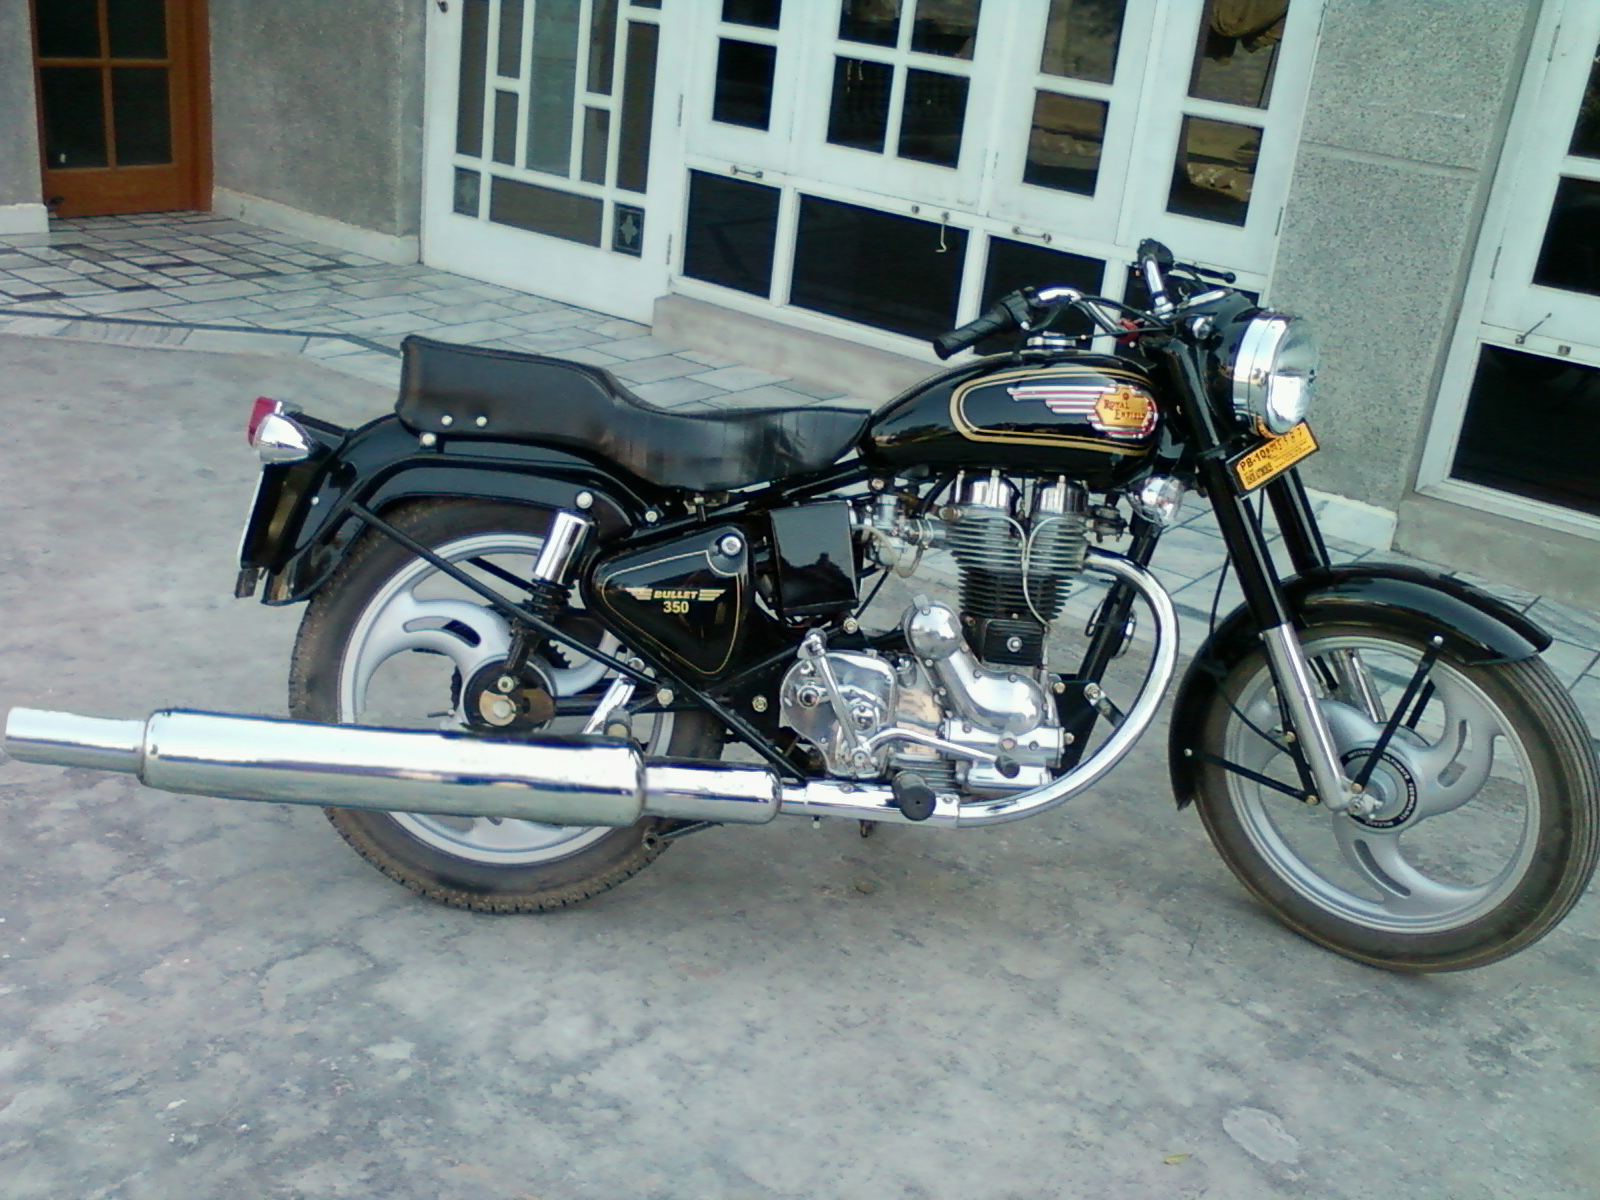 punjabi bullet wallpapers,land vehicle,motorcycle,vehicle,motor vehicle,fuel tank